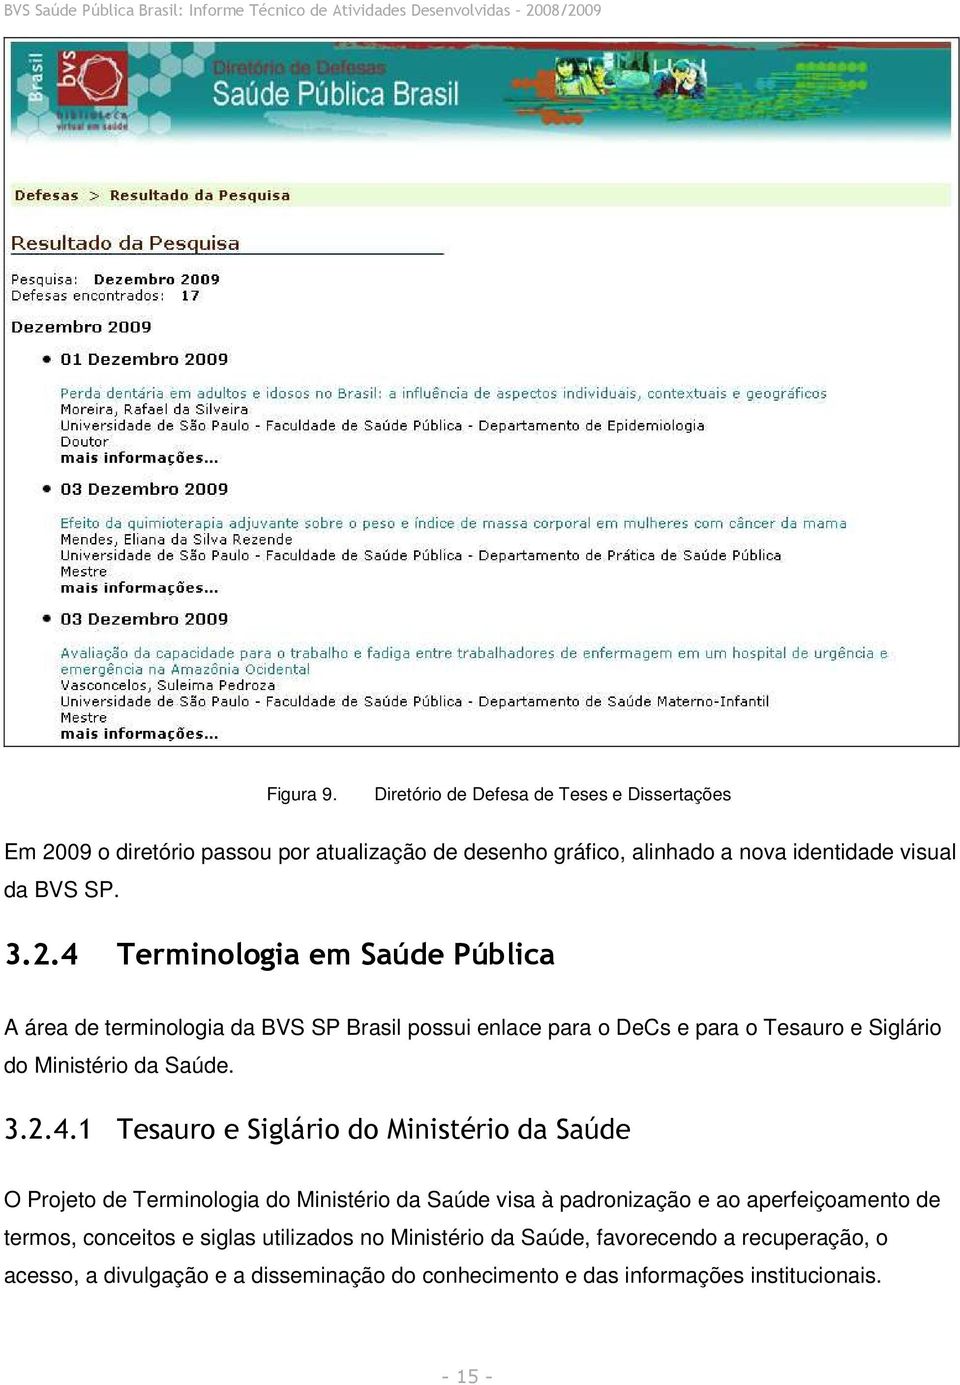 Terminologia em Saúde Pública A área de terminologia da BVS SP Brasil possui enlace para o DeCs e para o Tesauro e Siglário do Ministério da Saúde. 3.2.4.